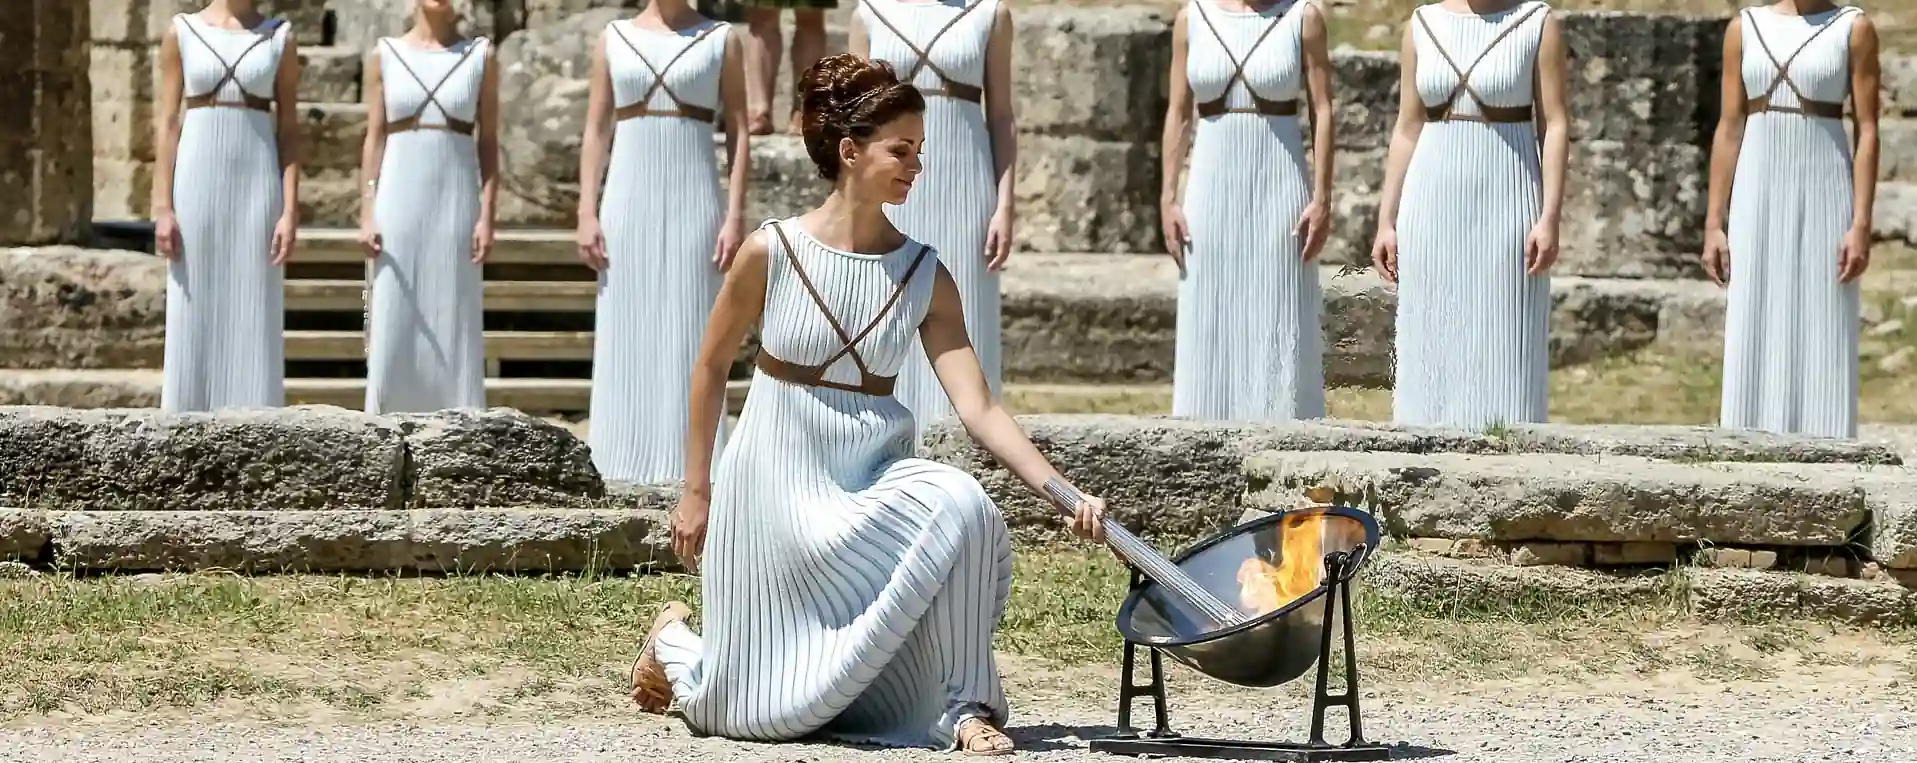 femme grecque antique enflamment une torche